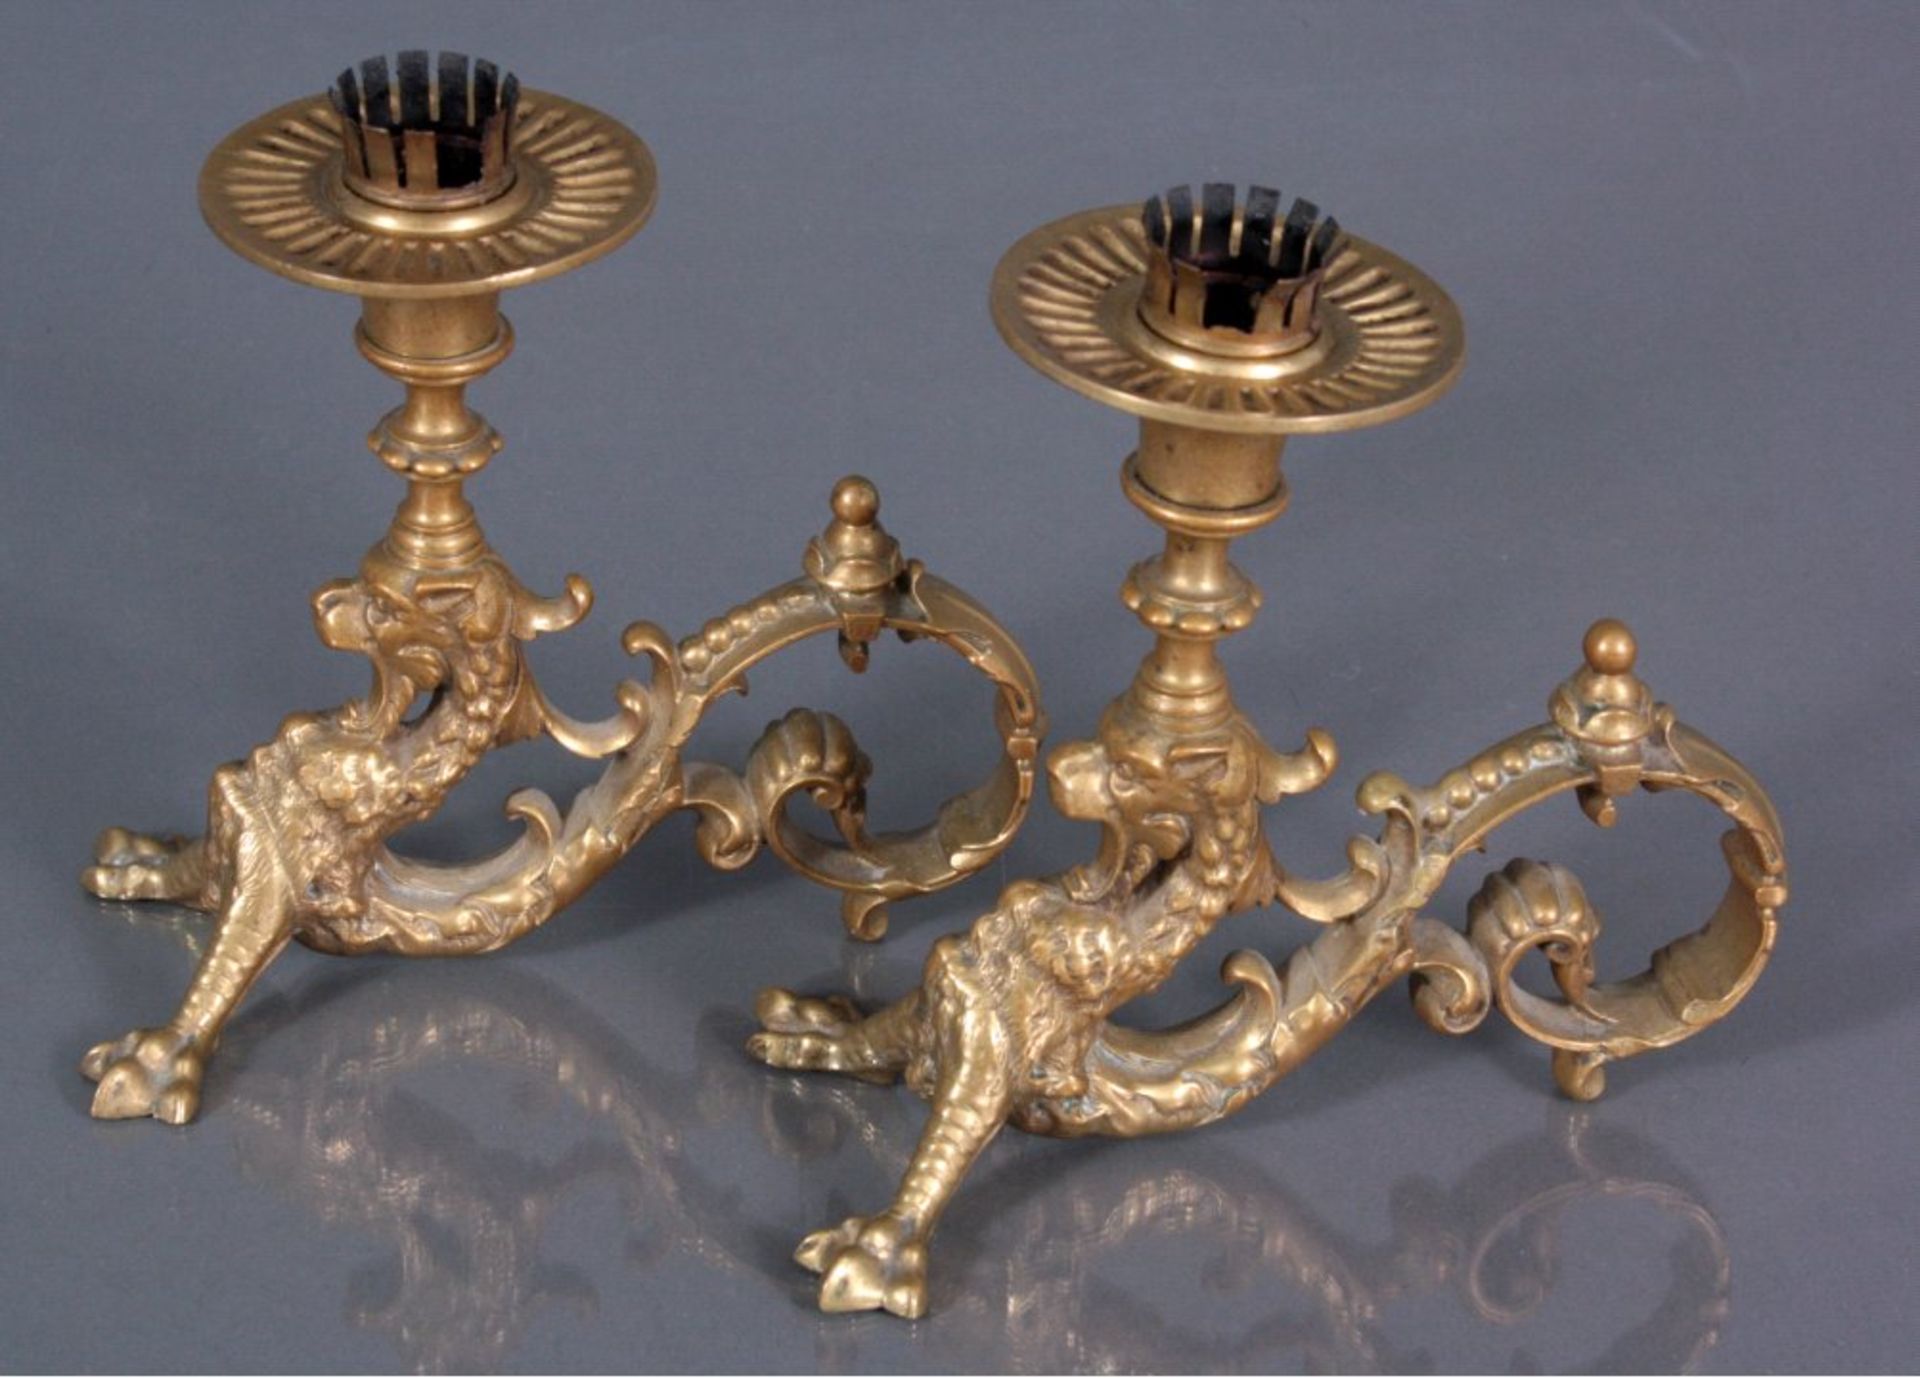 Paar Figürliche KerzenhalterChina, 20. Jh., Bronze gegossen. Drachenfiguren, ca. 14x15cm

Dieses Los